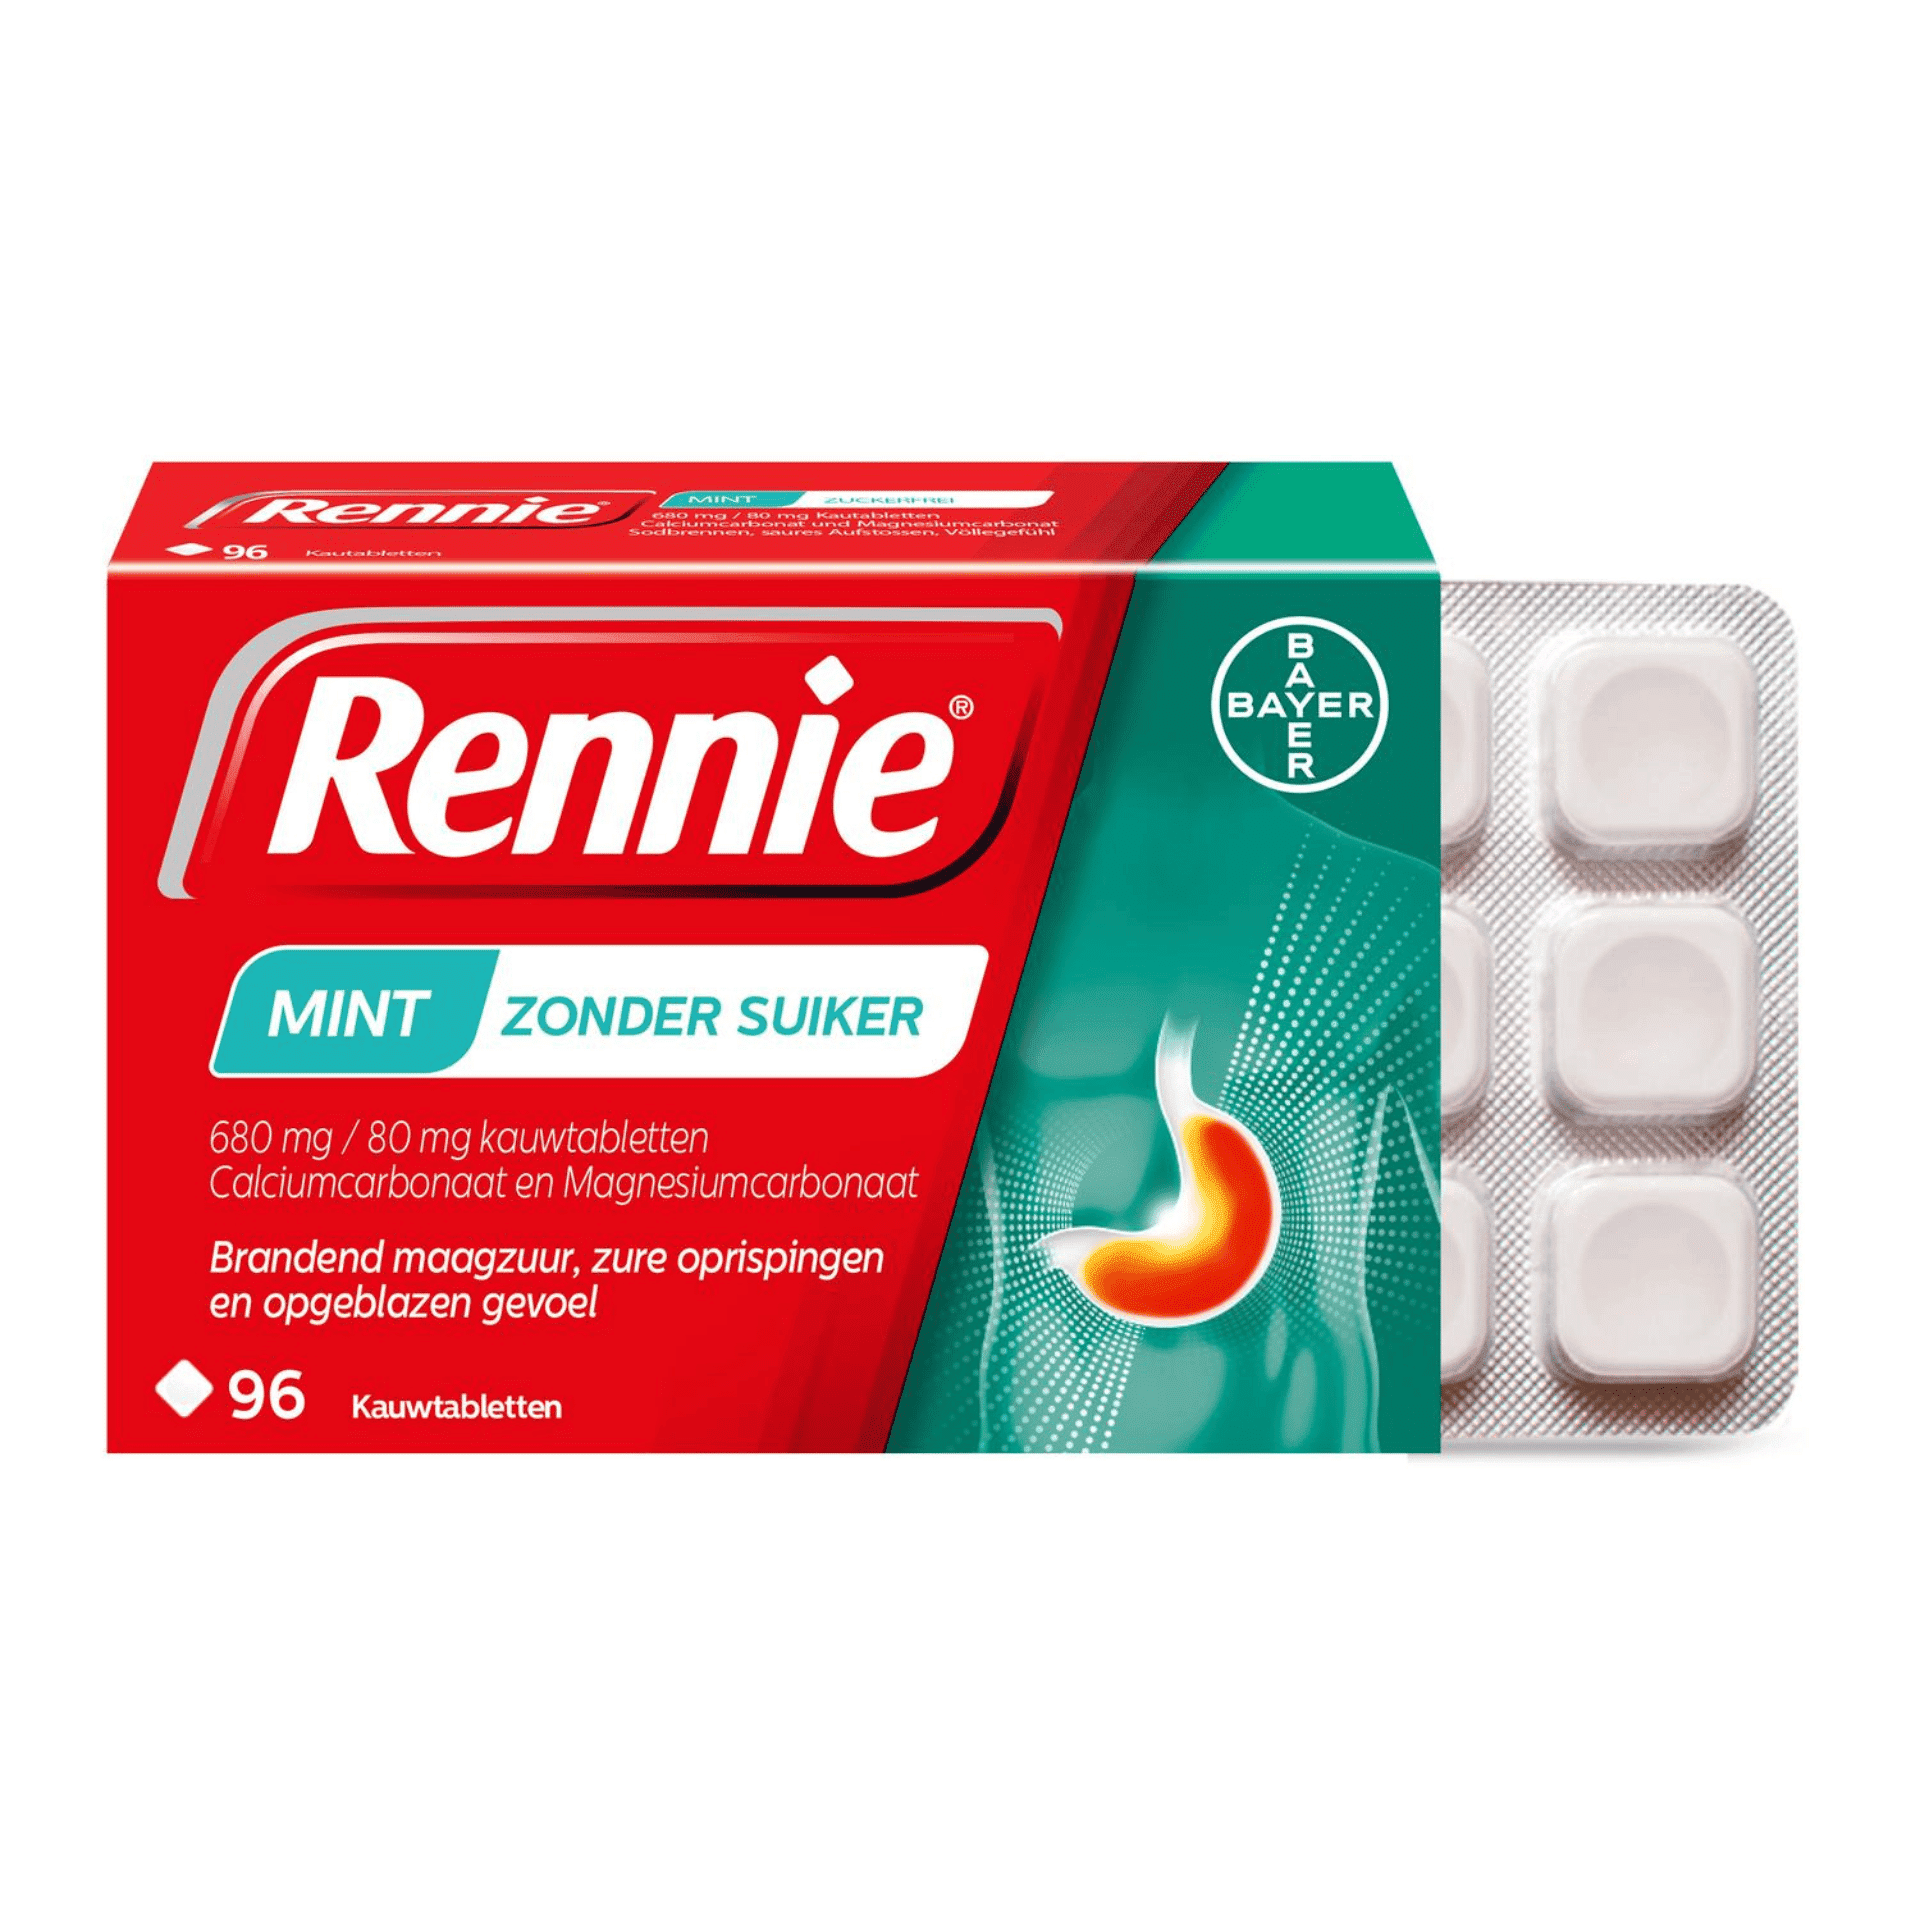 Rennie Mint zonder Suiker 680 mg/80 mg